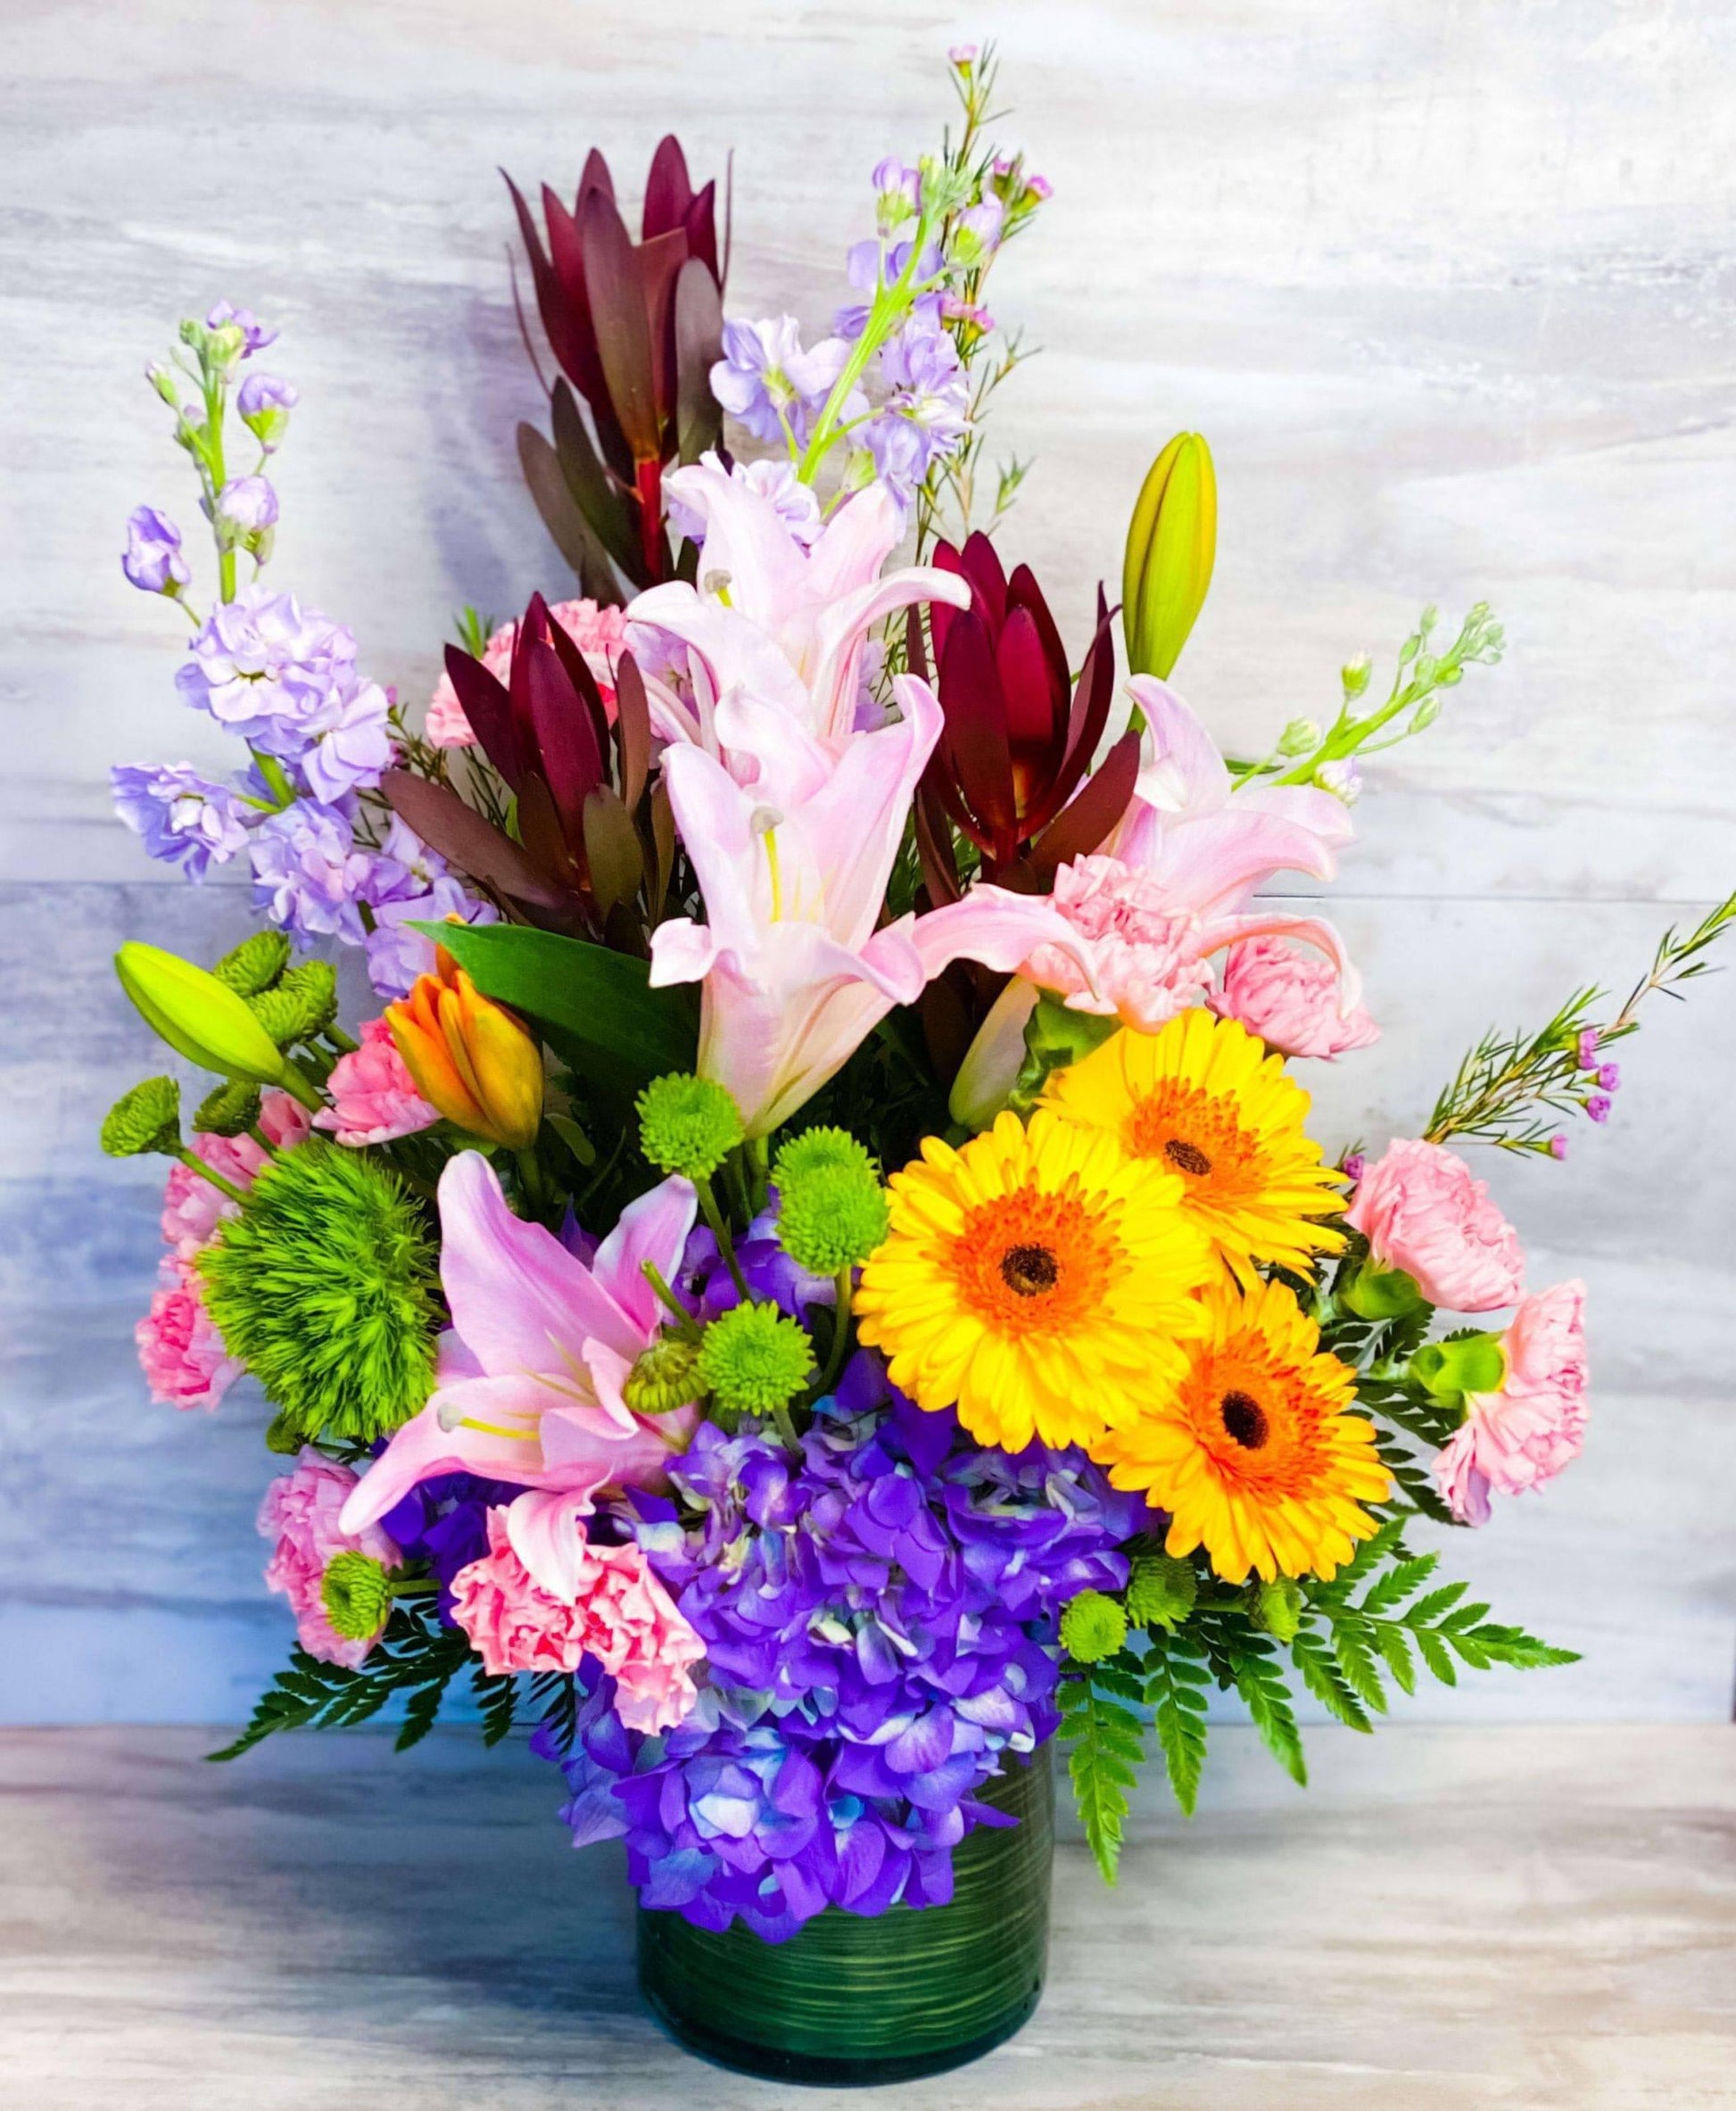 The Best Medicine by DGM Flowers - DGM Flowers  | Fort Lauderdale Florist